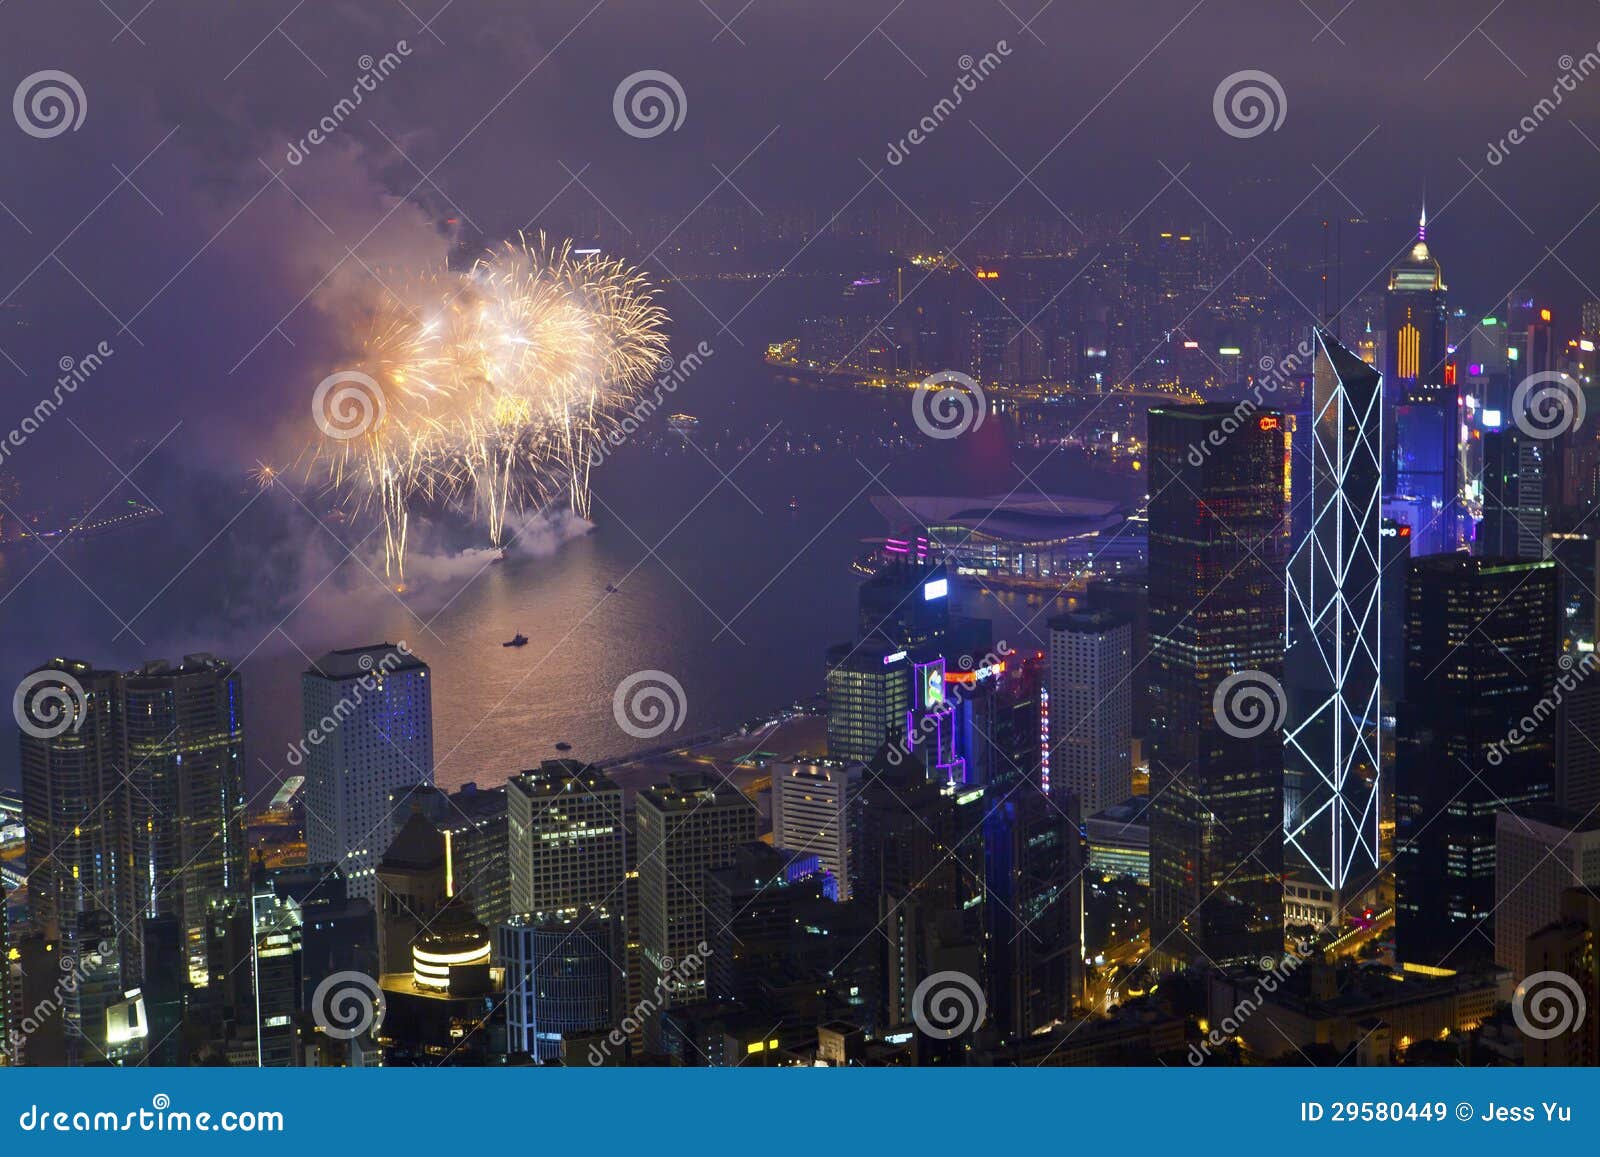 Fuegos artificiales de Hong Kong en Año Nuevo chino. HONG KONG - 11 de febrero, fuegos artificiales chinos del Año Nuevo de Hong Kong en el puerto de Victoria, Hong Kong el 11 de febrero de 2013. Es la celebración del año de serpiente y dura por 30 minutos.